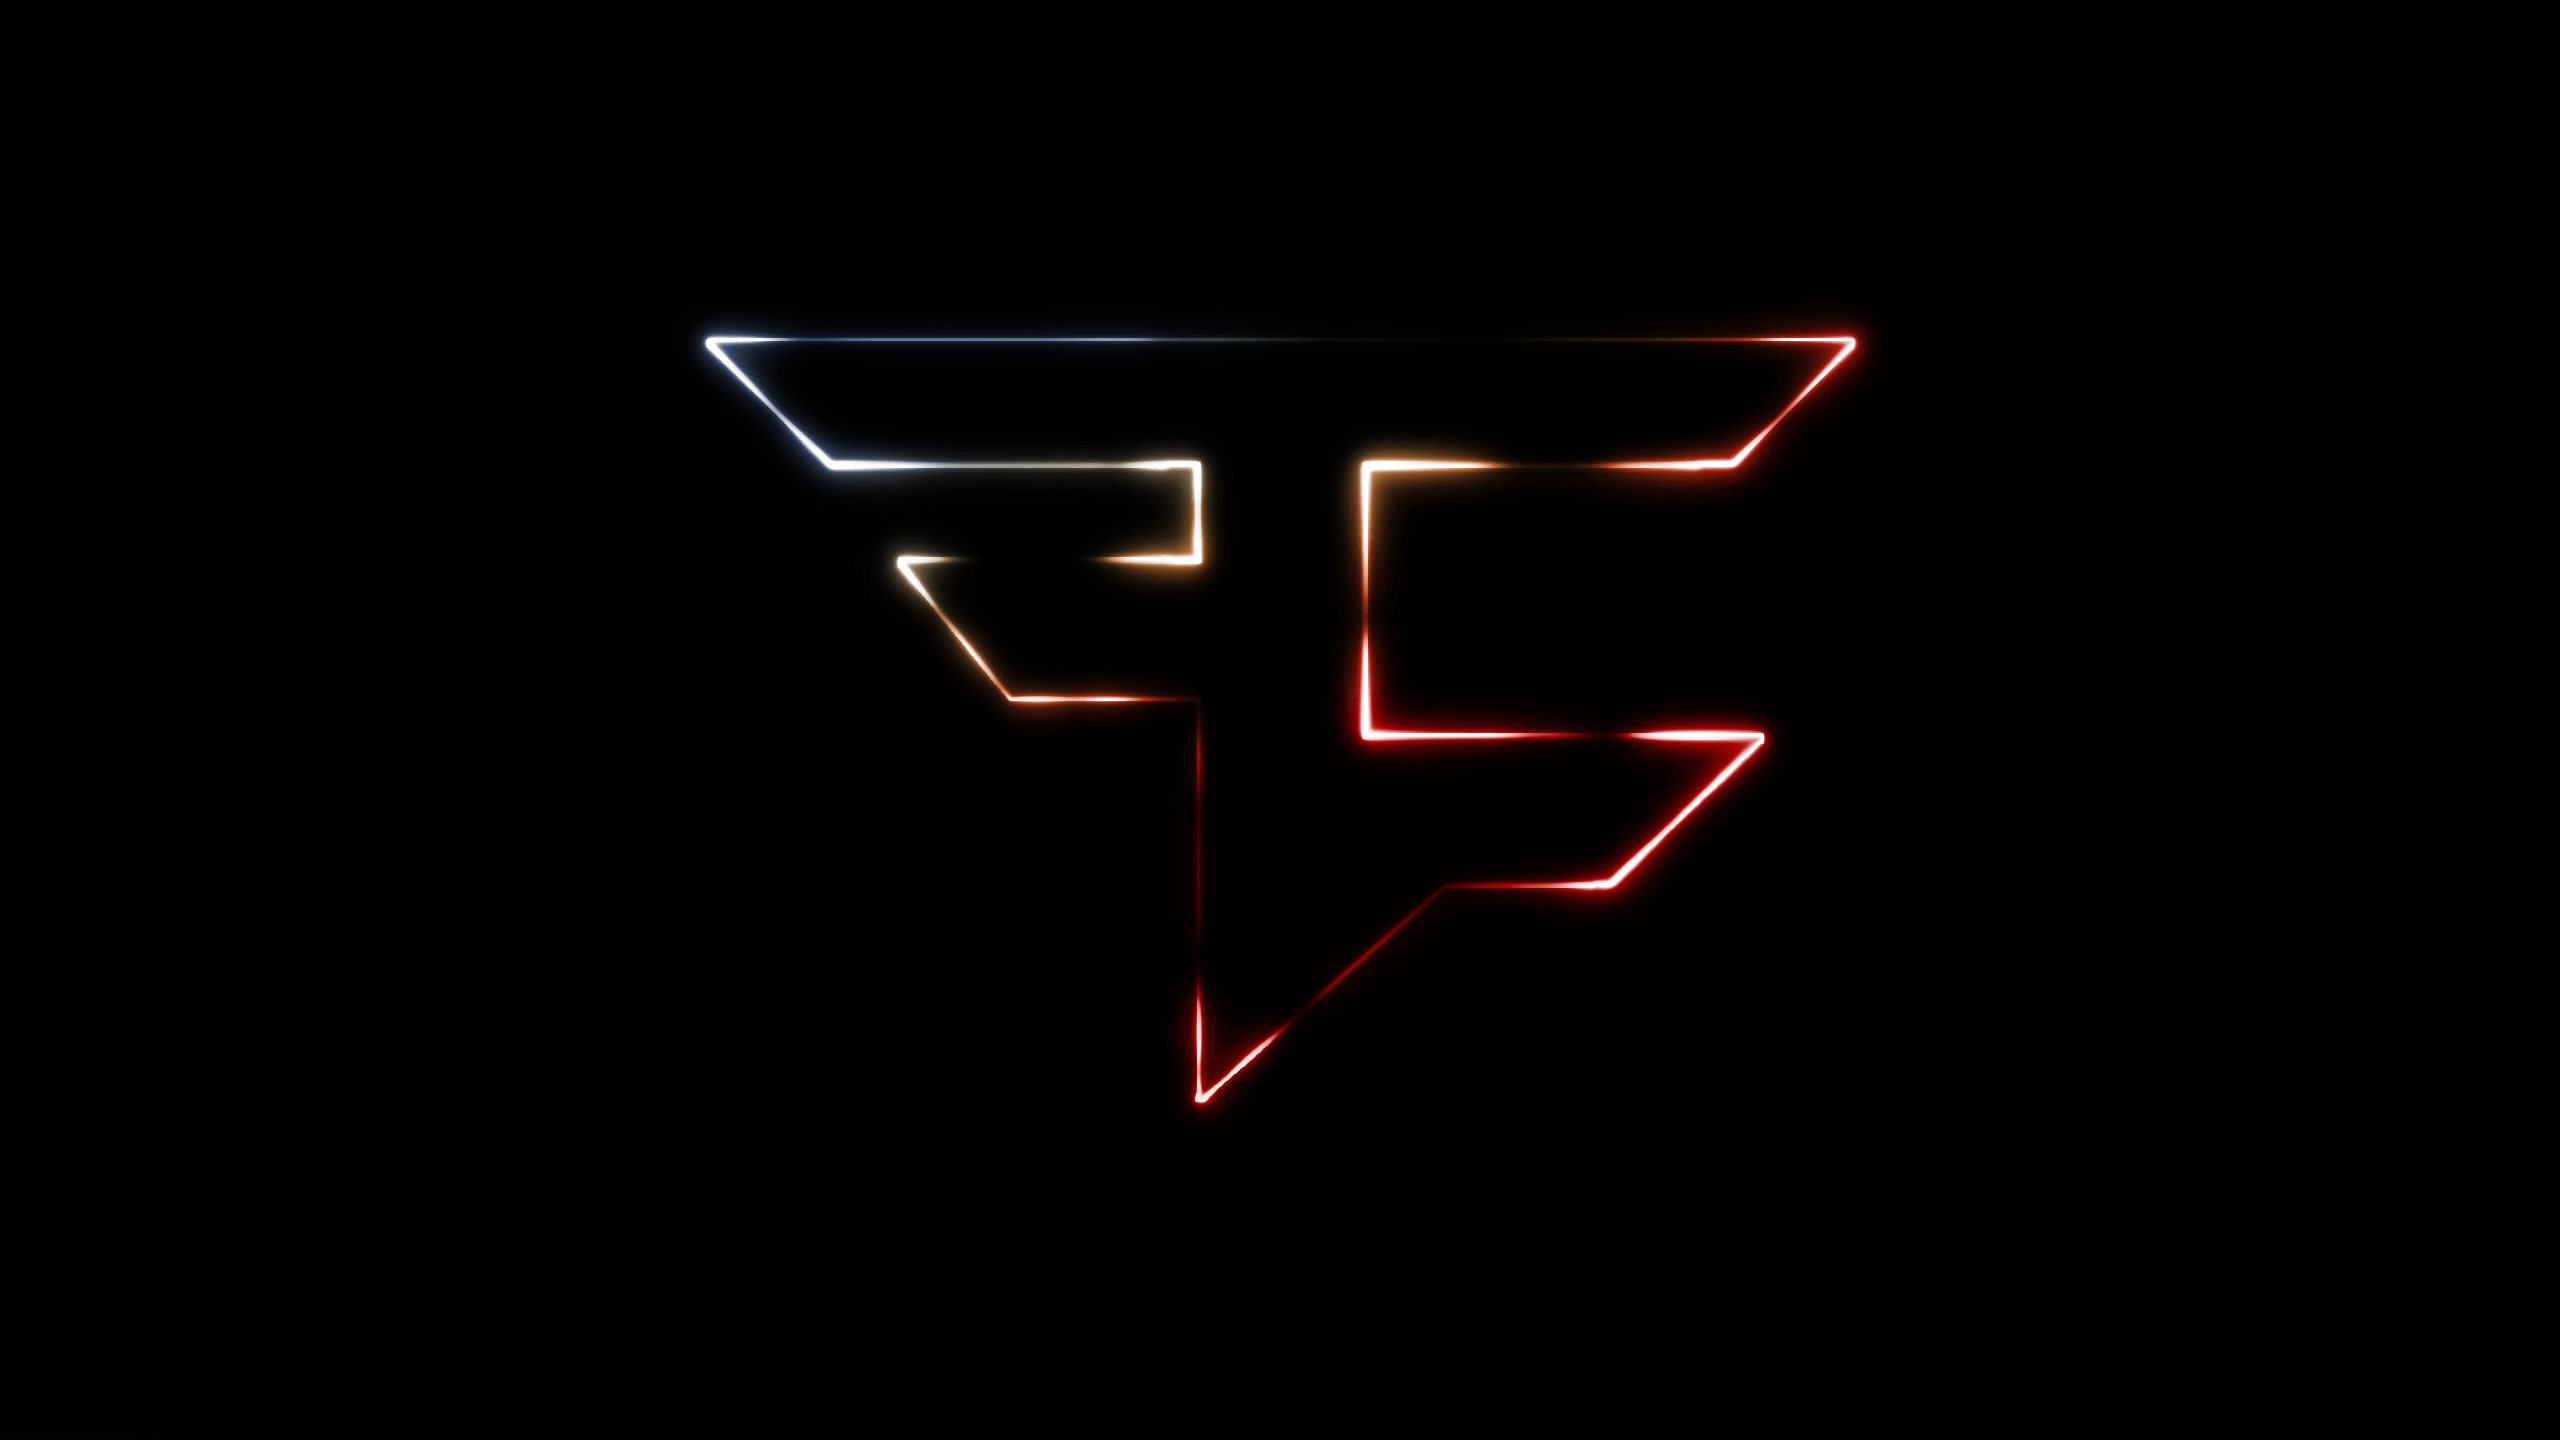 Neon glowing FaZe Clan logo made by me. Faze clan logo